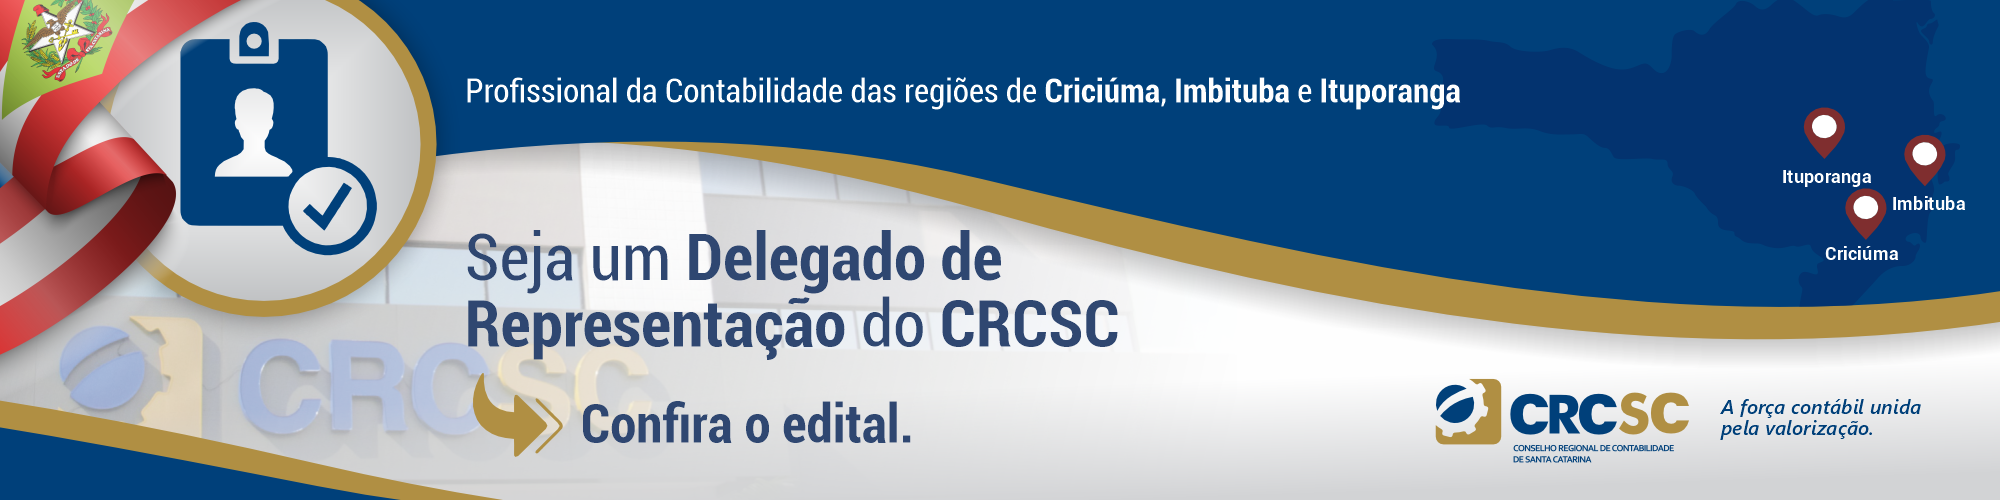 Seja um Delegado de Representação do CRCSC